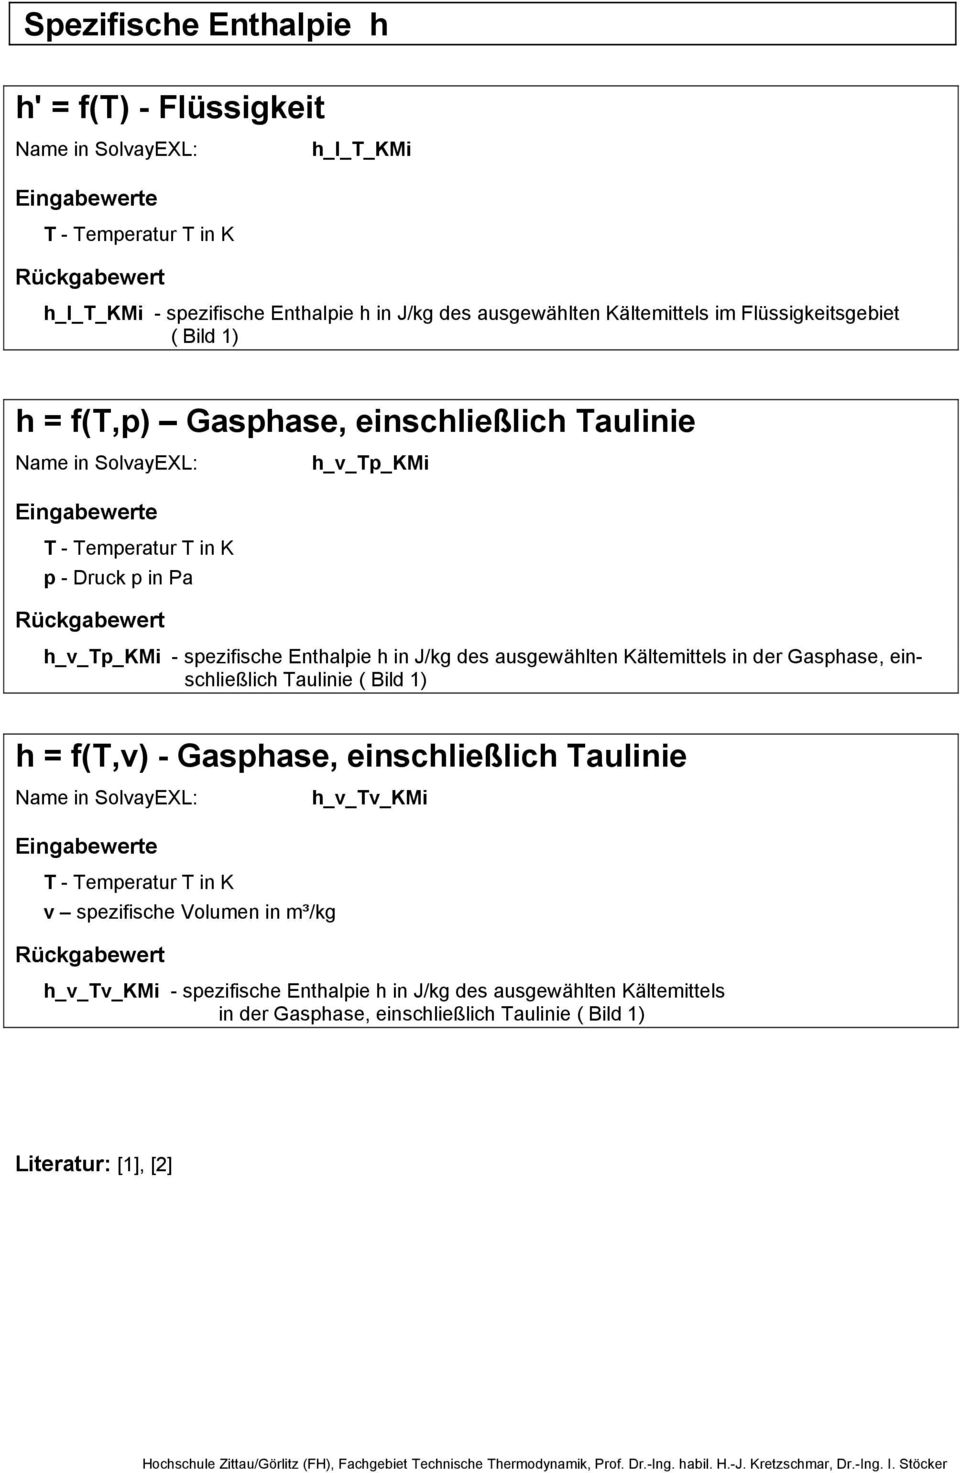 J/kg des ausgewählten Kältemittels in der Gasphase, einschließlich Taulinie ( Bild 1) h = f(t,v) - Gasphase, einschließlich Taulinie h_v_tv_kmi